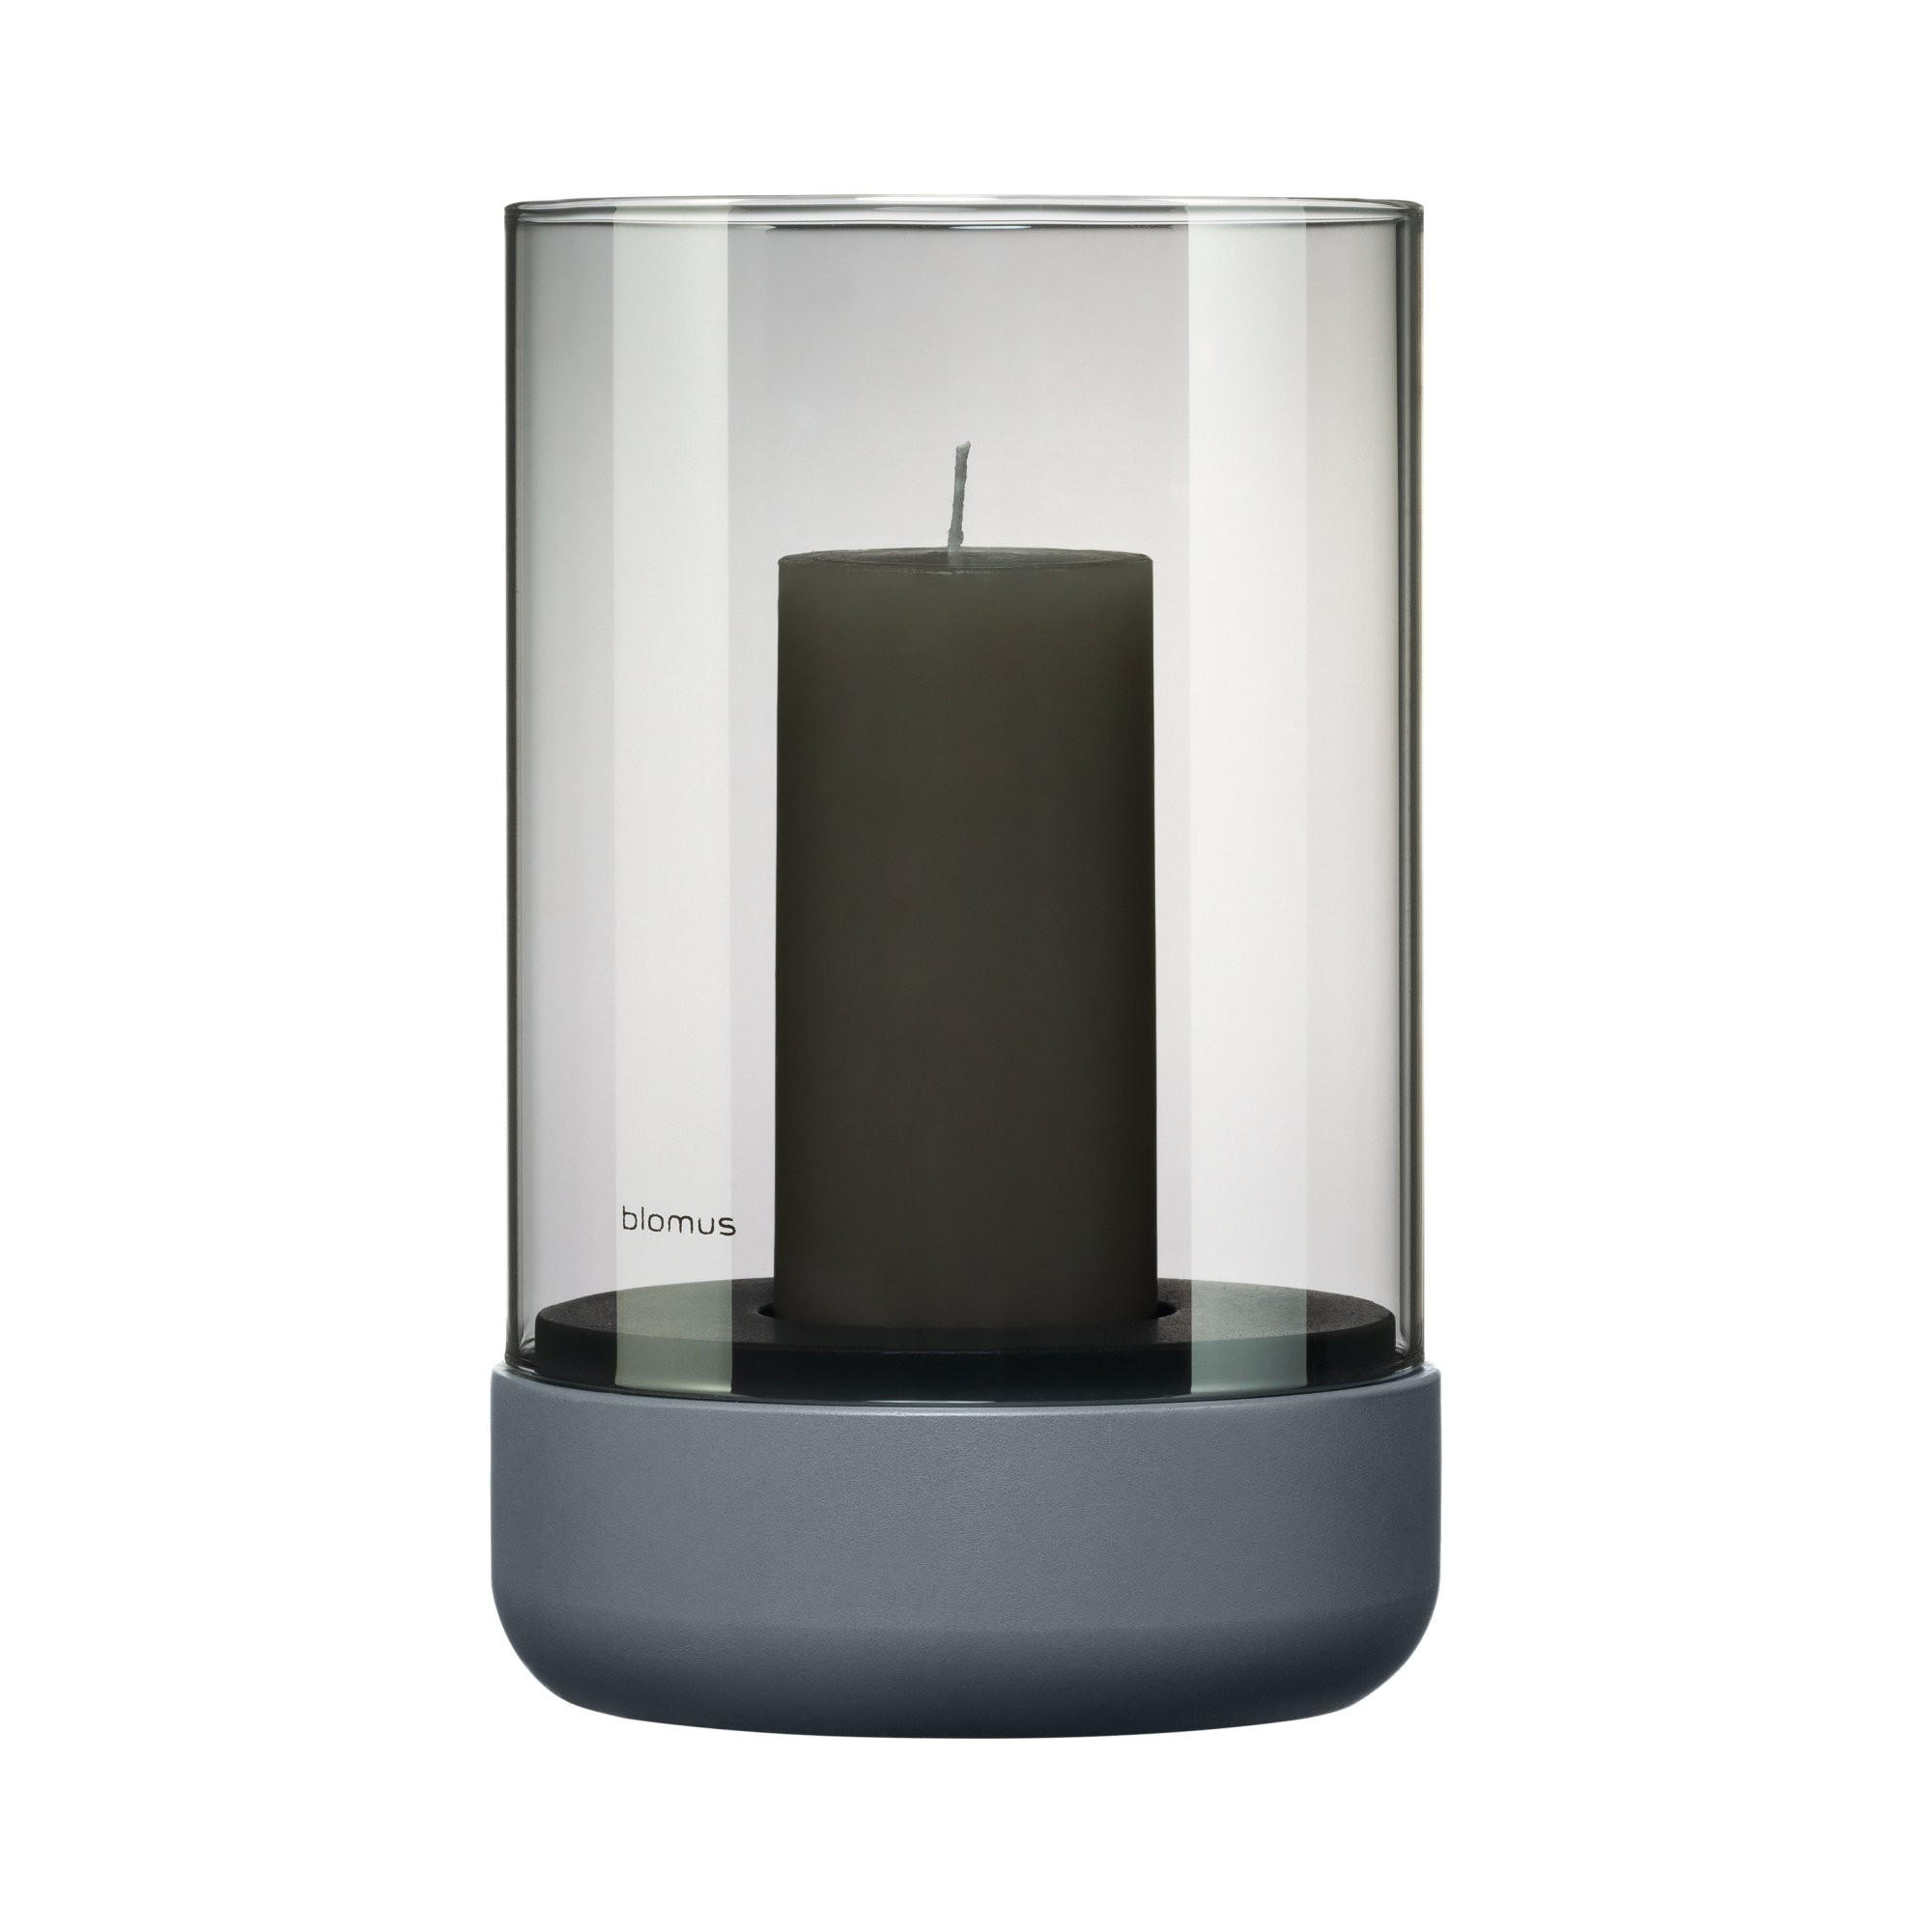 WINDLICHT  - Dunkelgrau, Glas (12/20cm) - Blomus